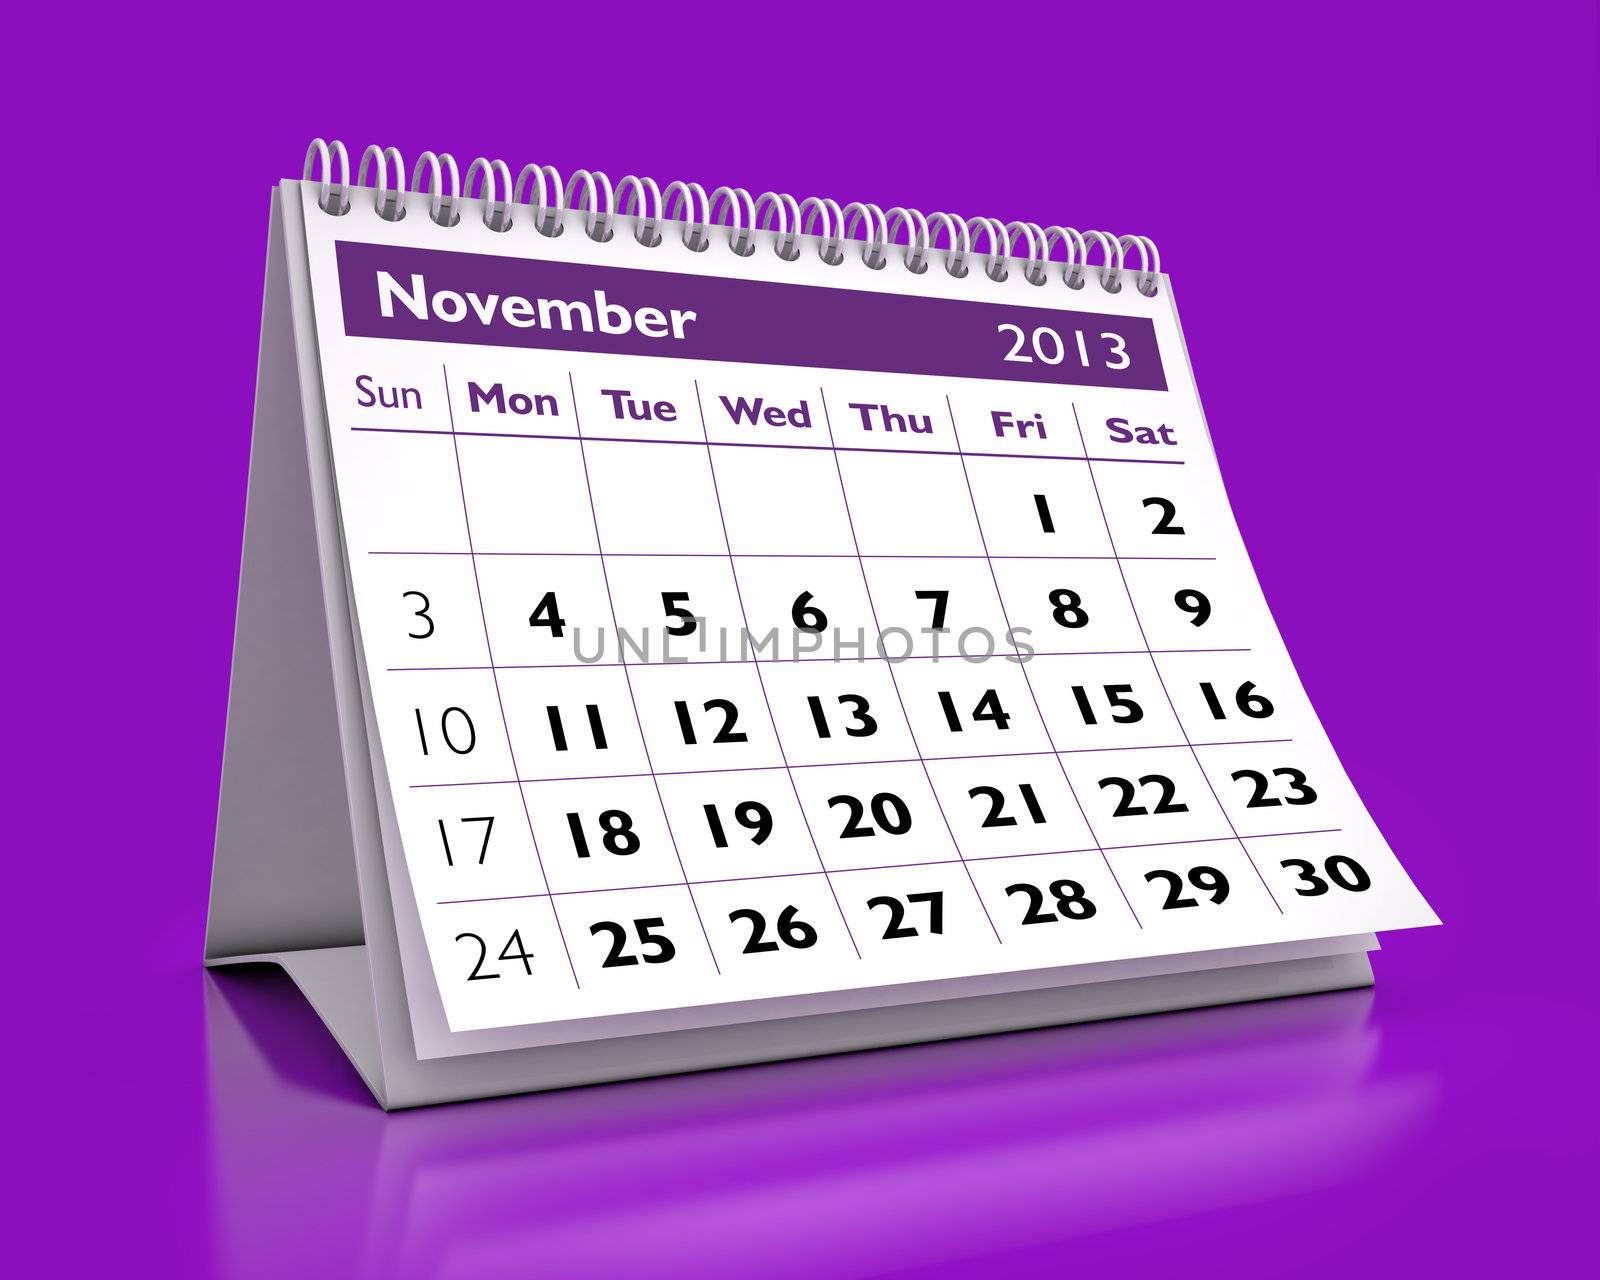 November 2013 Calendar by benjaminet